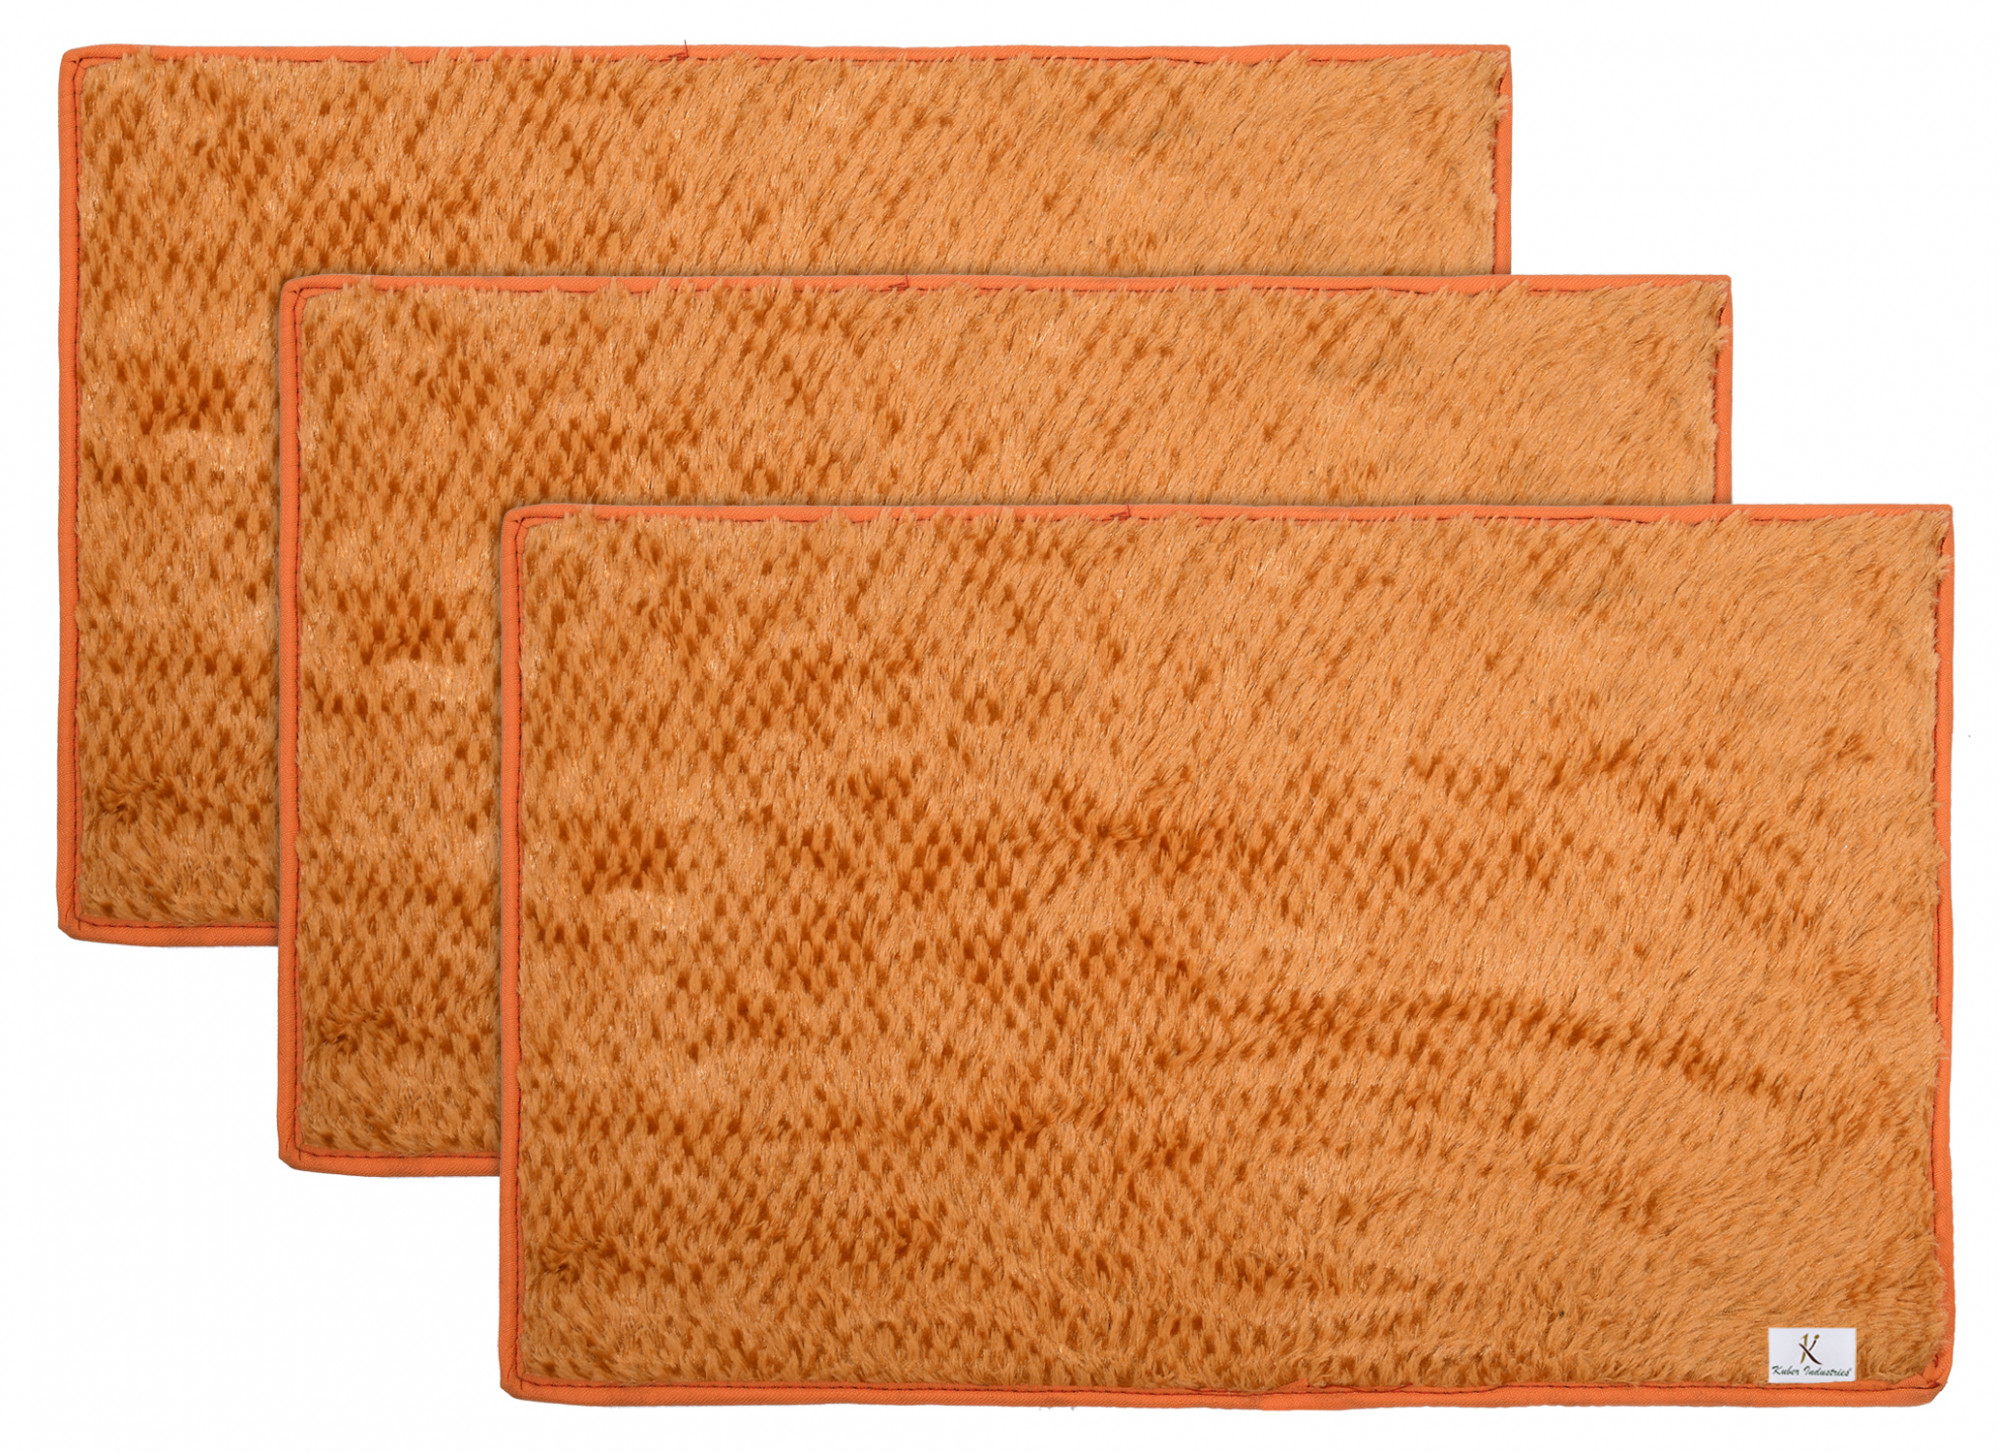 Kuber Industries Shaggy Durable Microfiber Anti-Skid Door Mat, Heavy Duty Doormat, Indoor Outdoor, Easy Clean, Waterproof, Low-Profile Mats for Entry, Patio, Garage (Gold)-33_S_KUBQMART11470